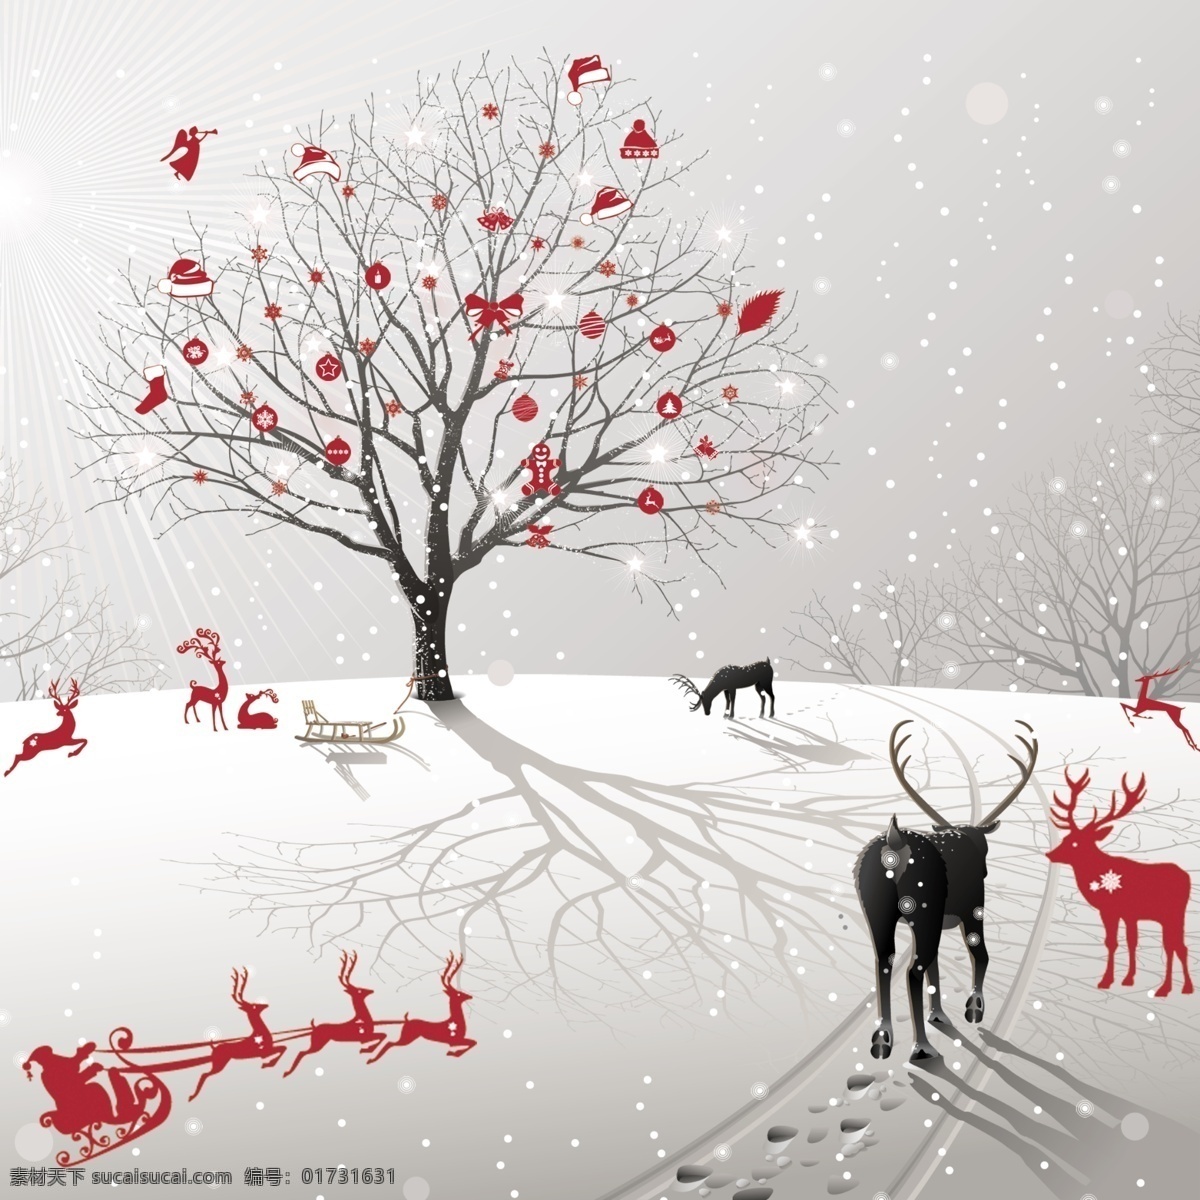 圣诞狂欢 圣诞节 海报 雪花 冬季 麋鹿 文化艺术 节日庆祝